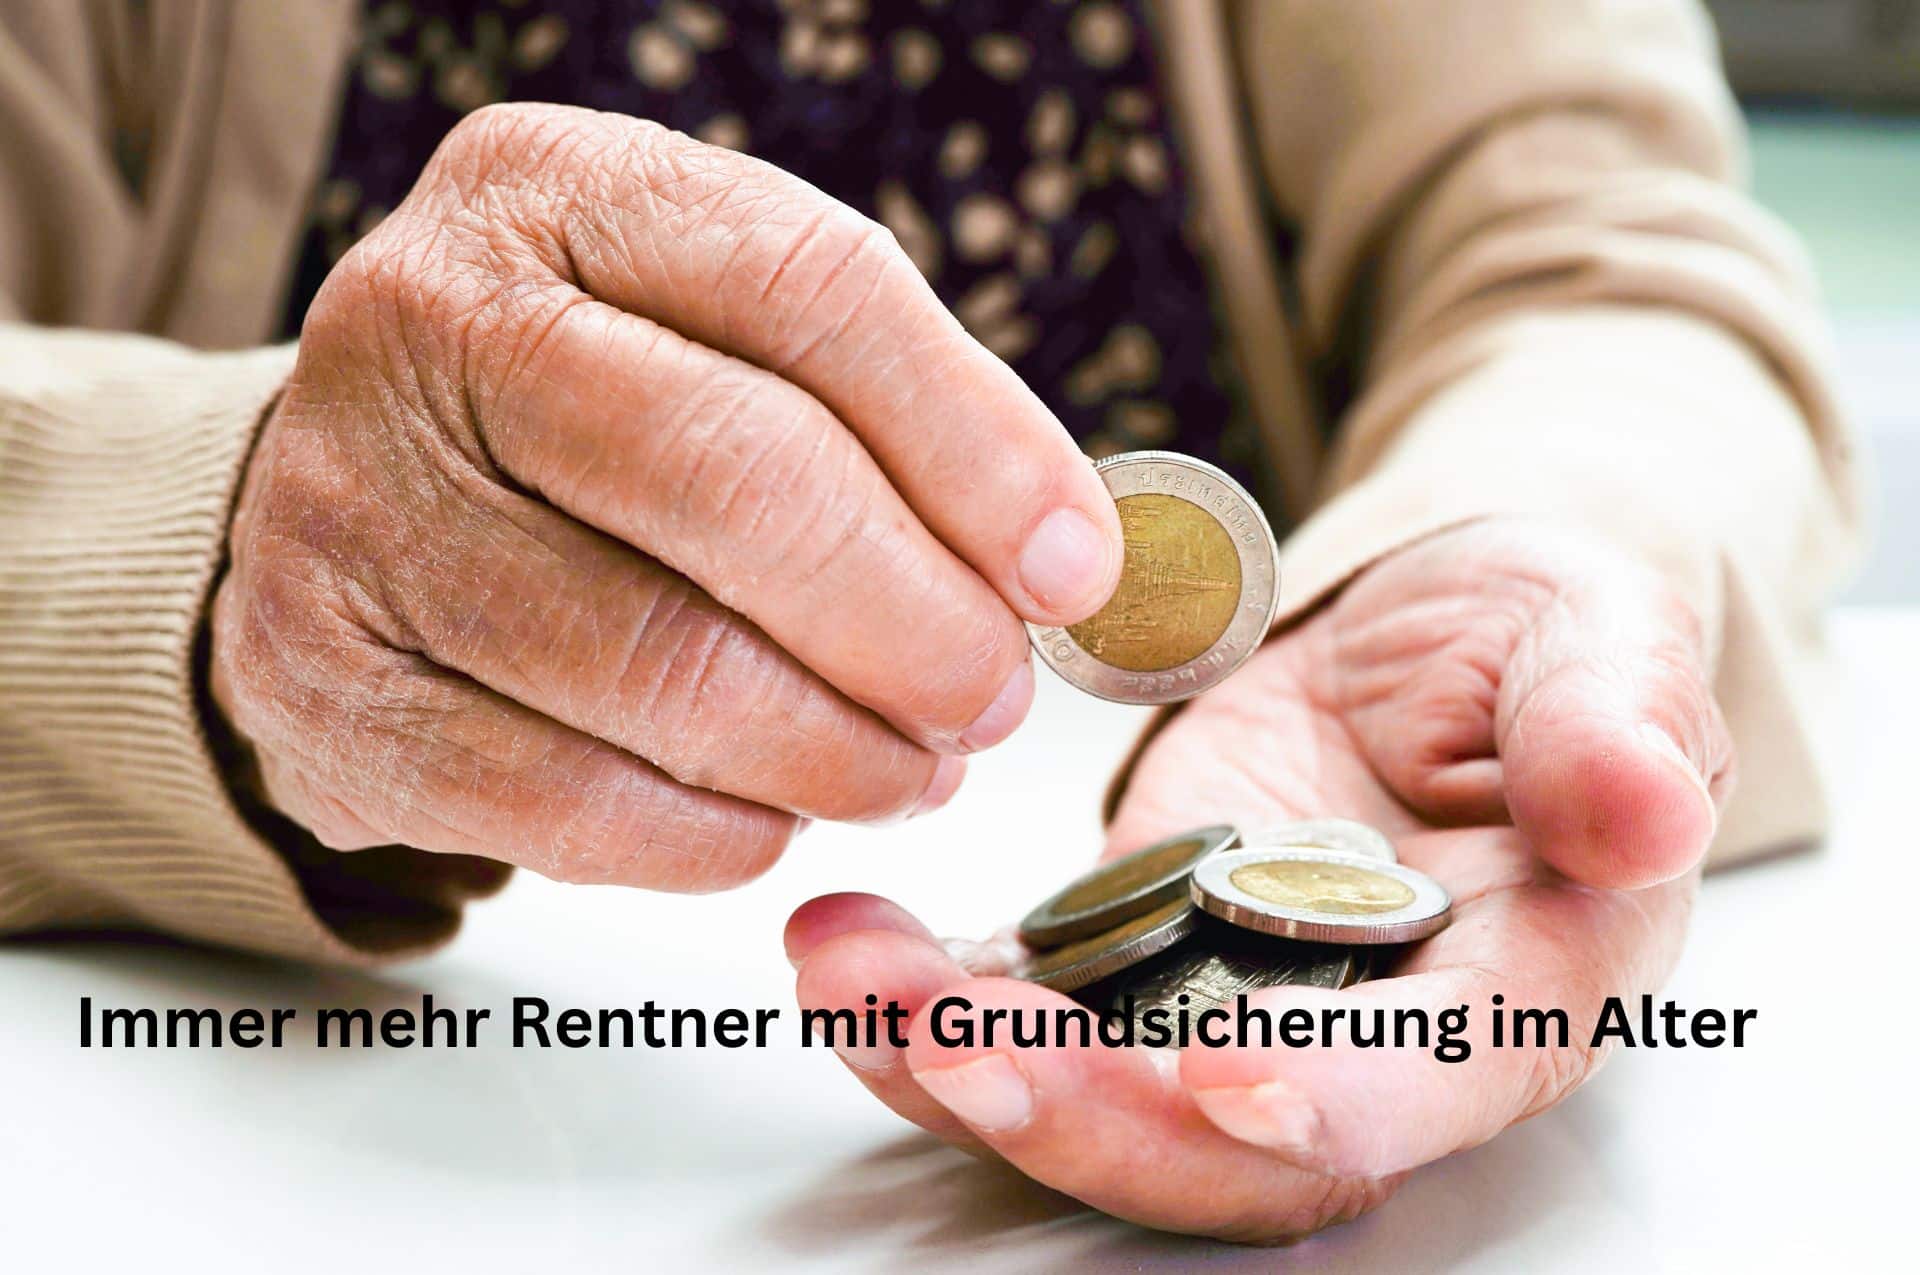 Immer mehr Rentner in der Grundsicherung – wie viel und warum?